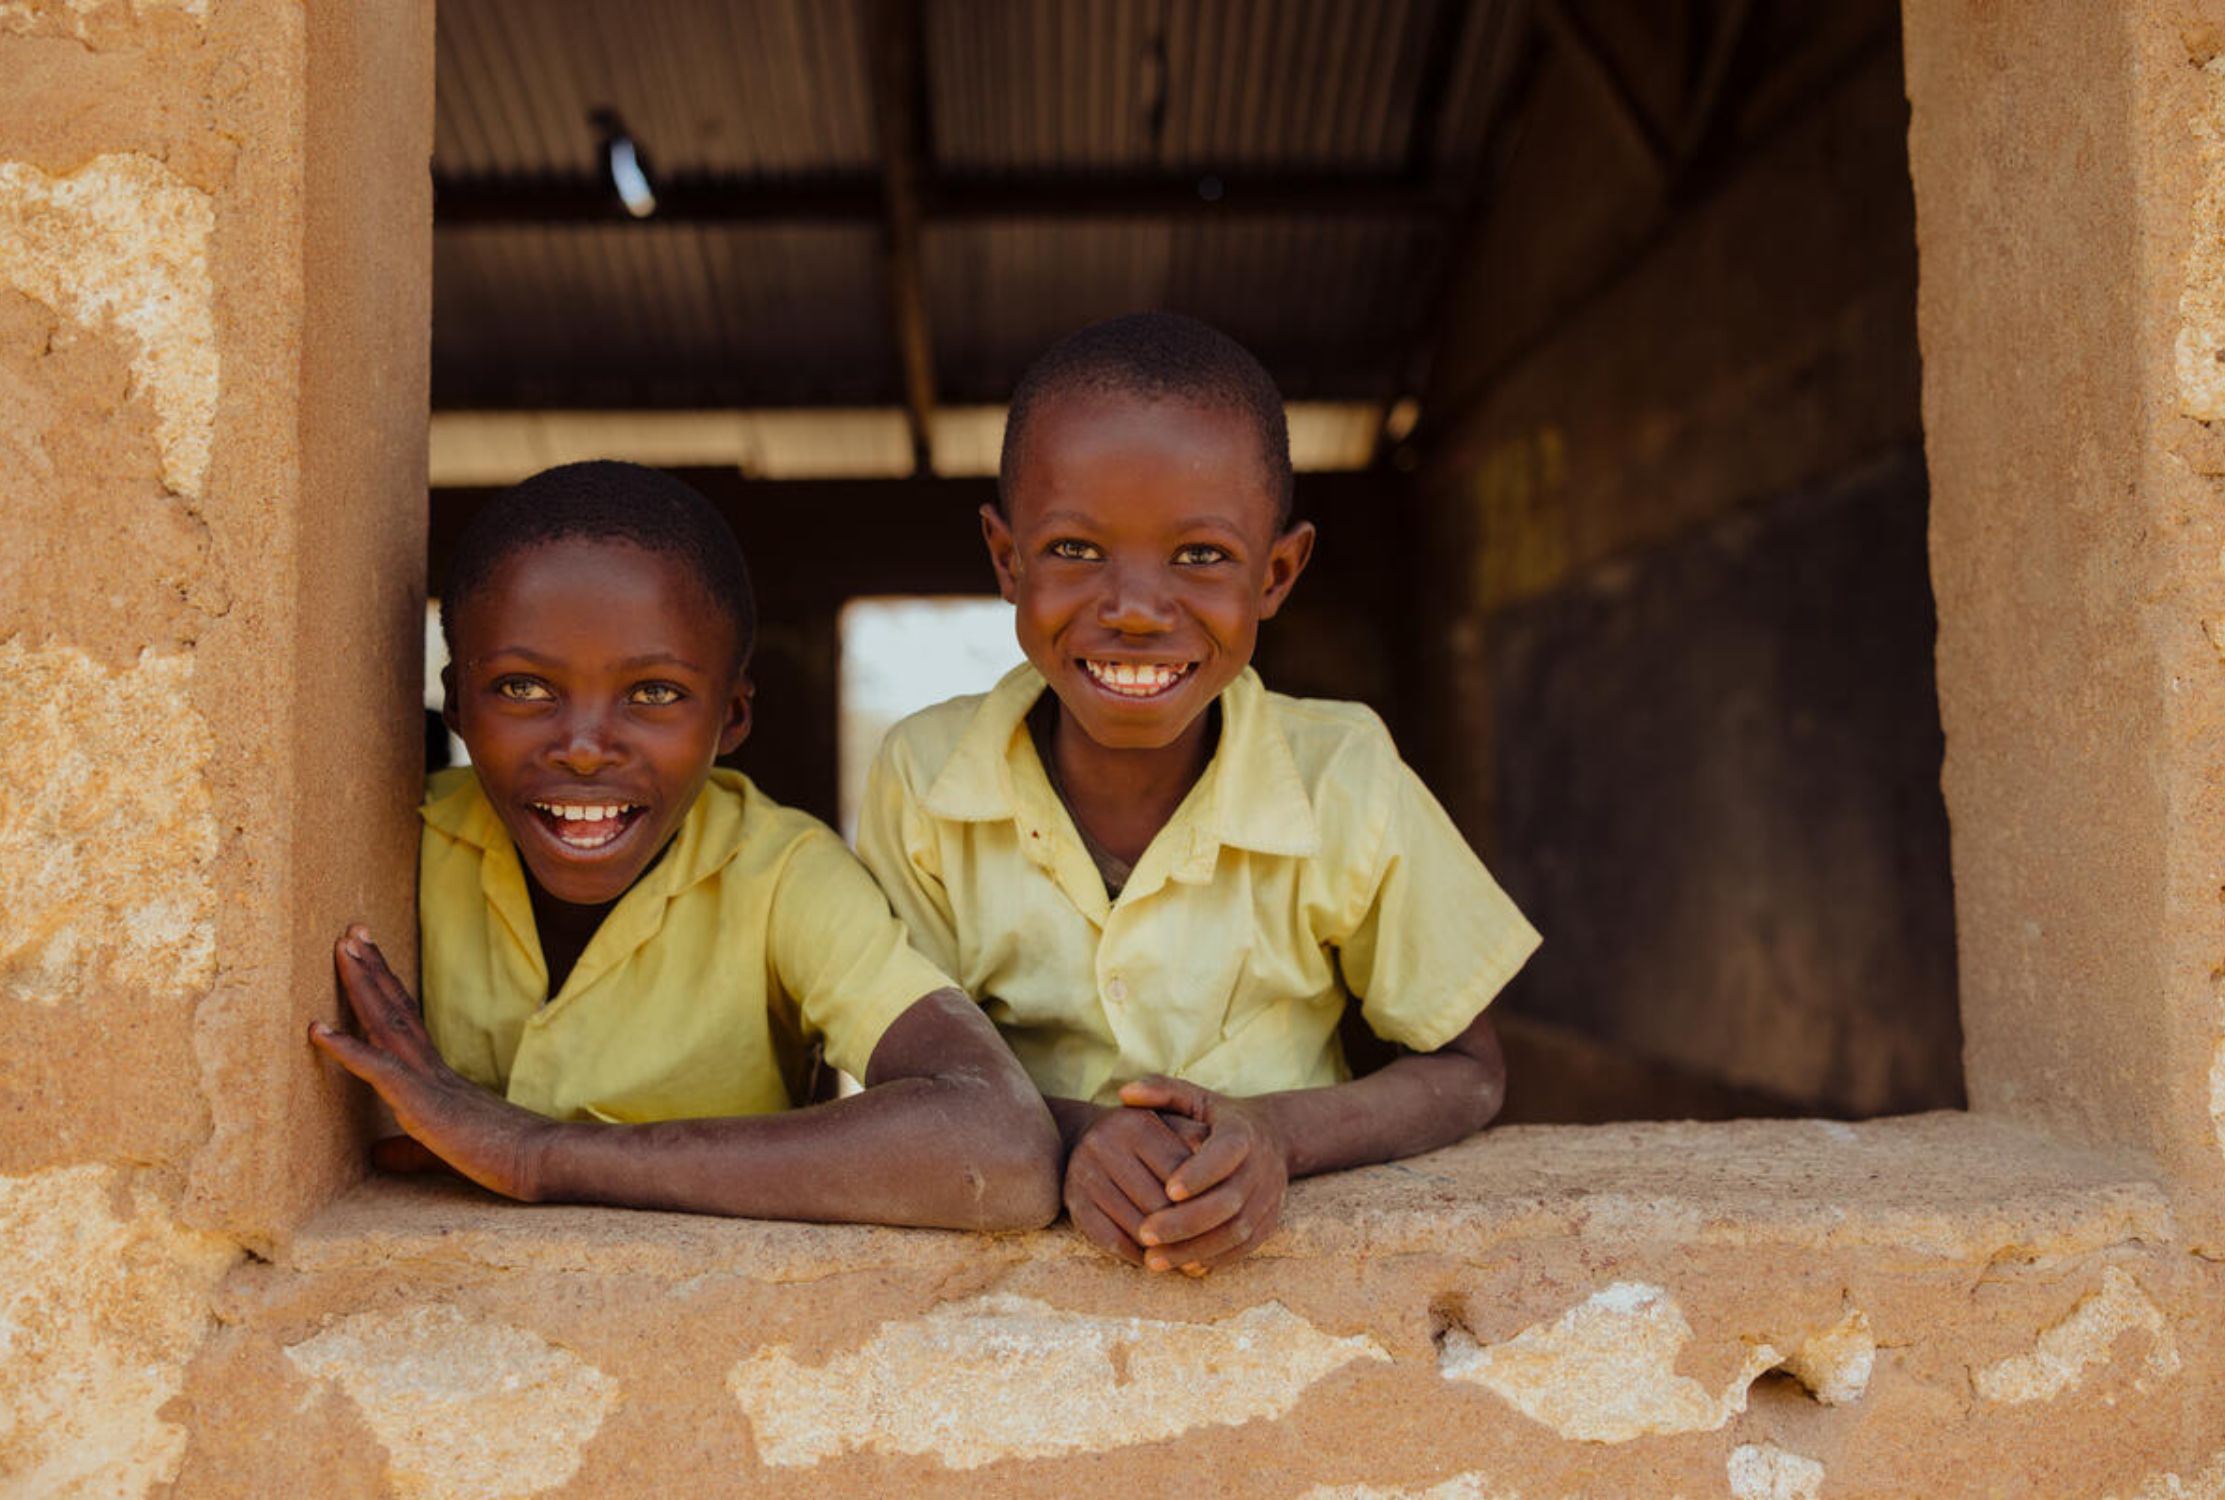 A Kenyan girl and boy smiling